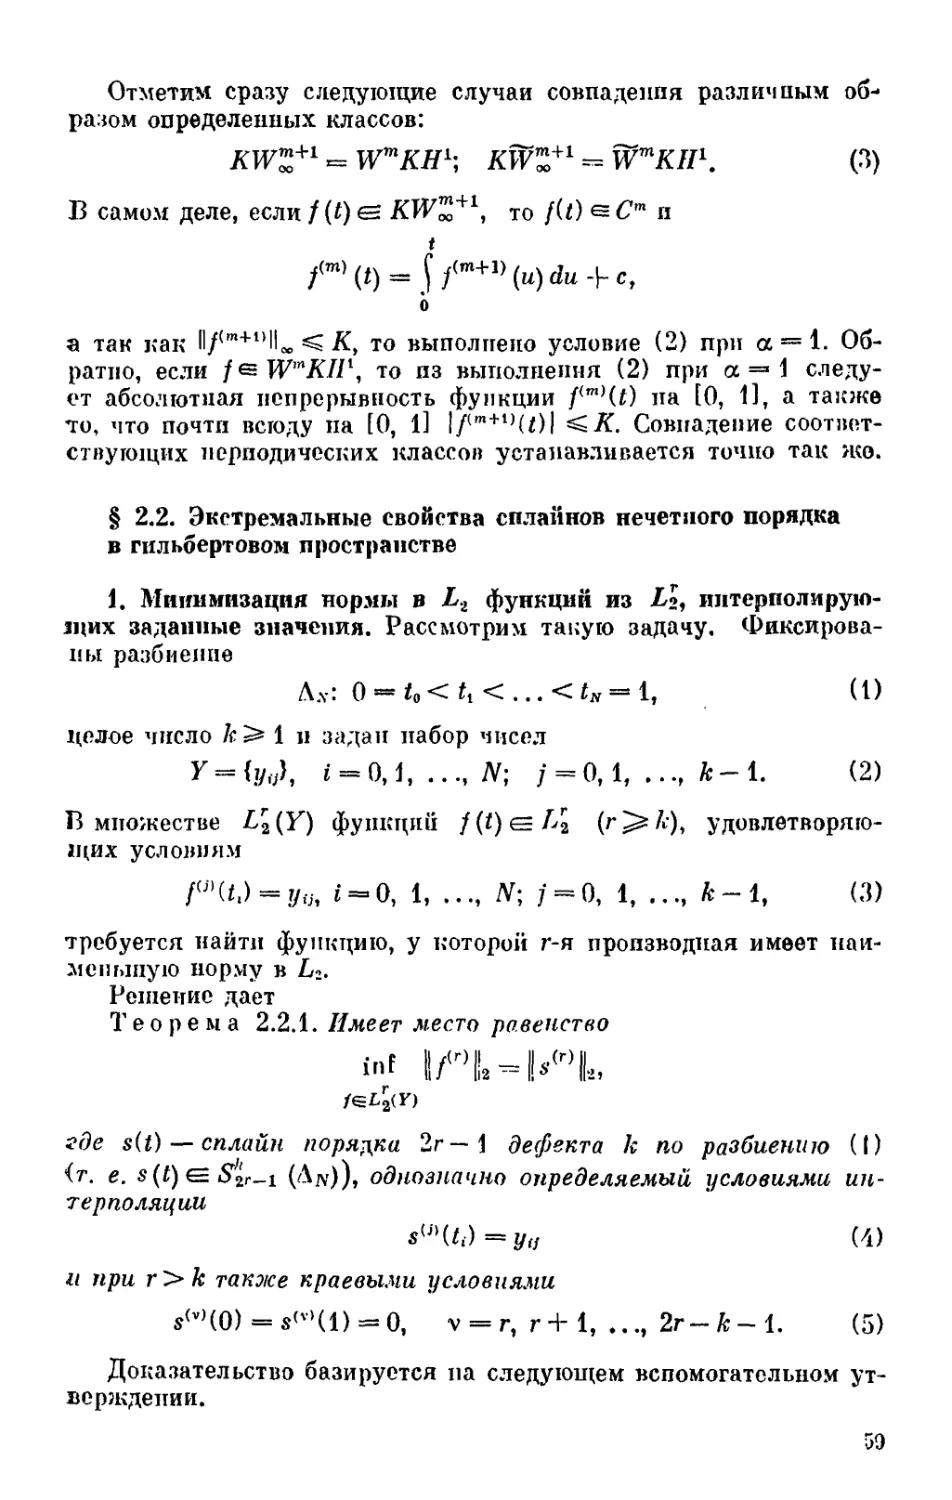 § 2.2. Экстремальные свойства сплайнов нечетного порядка в гильбертовом пространстве